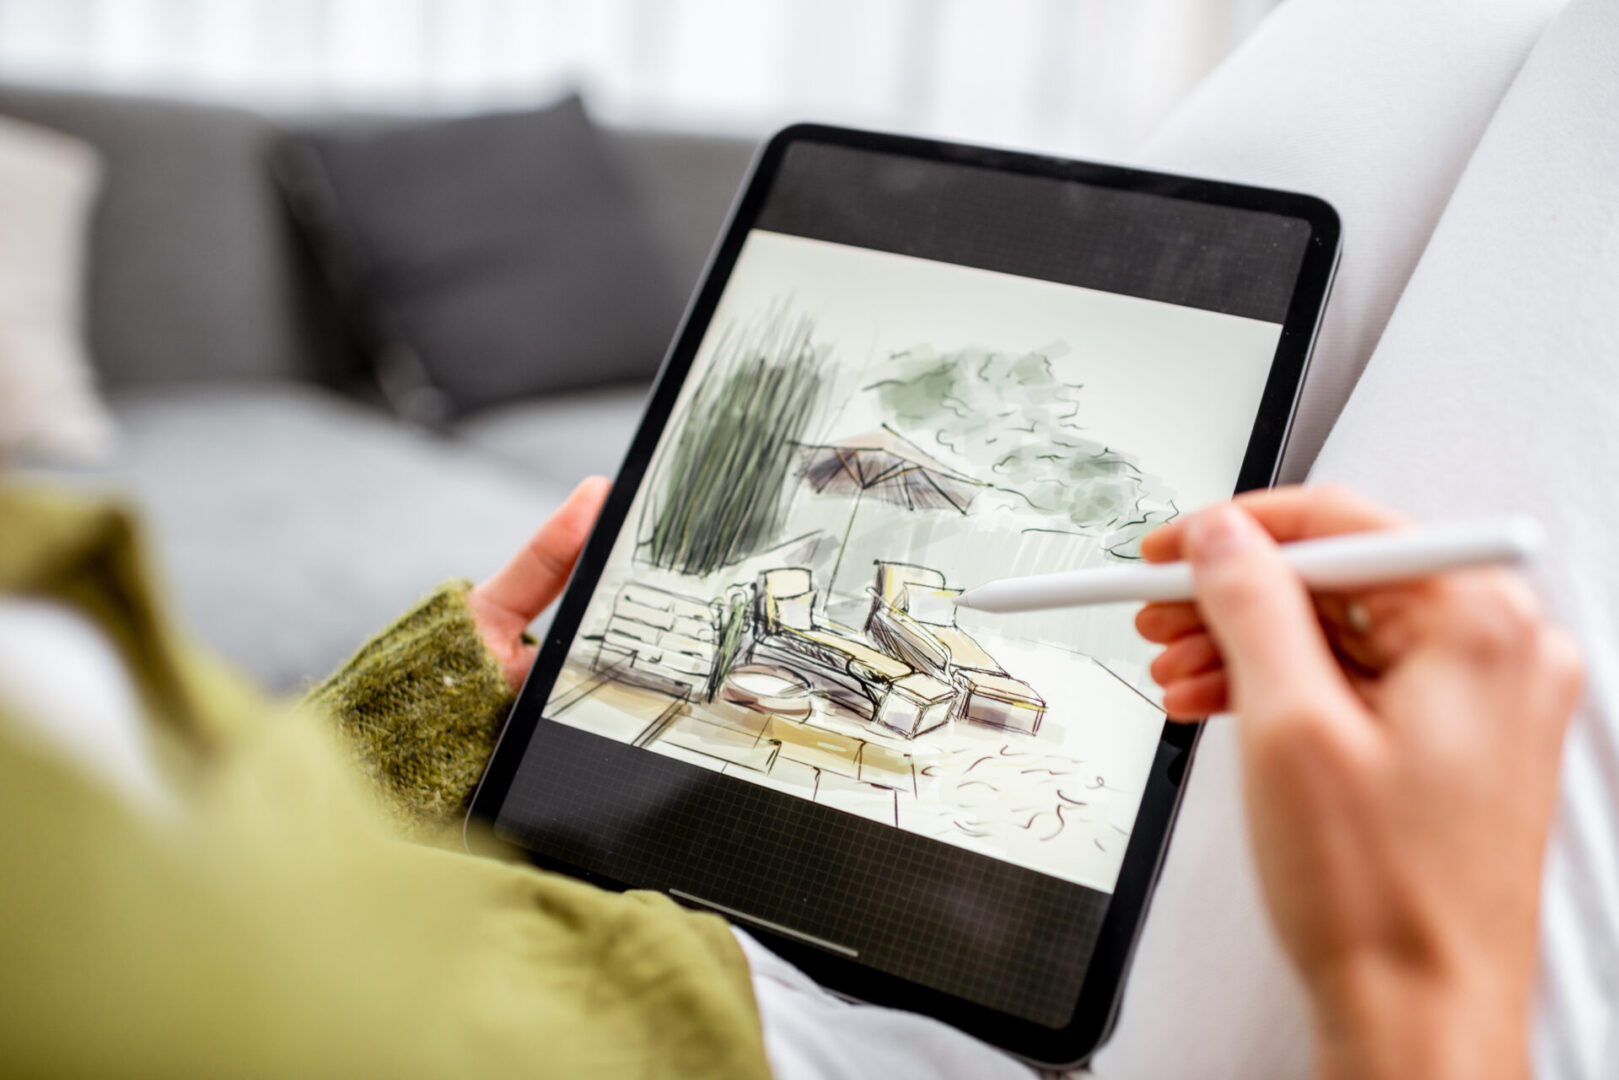 Artist or designer making landscape design, drawing on a digital tablet with pencil, close-up on a screen. Designing on a digital touchpad concept